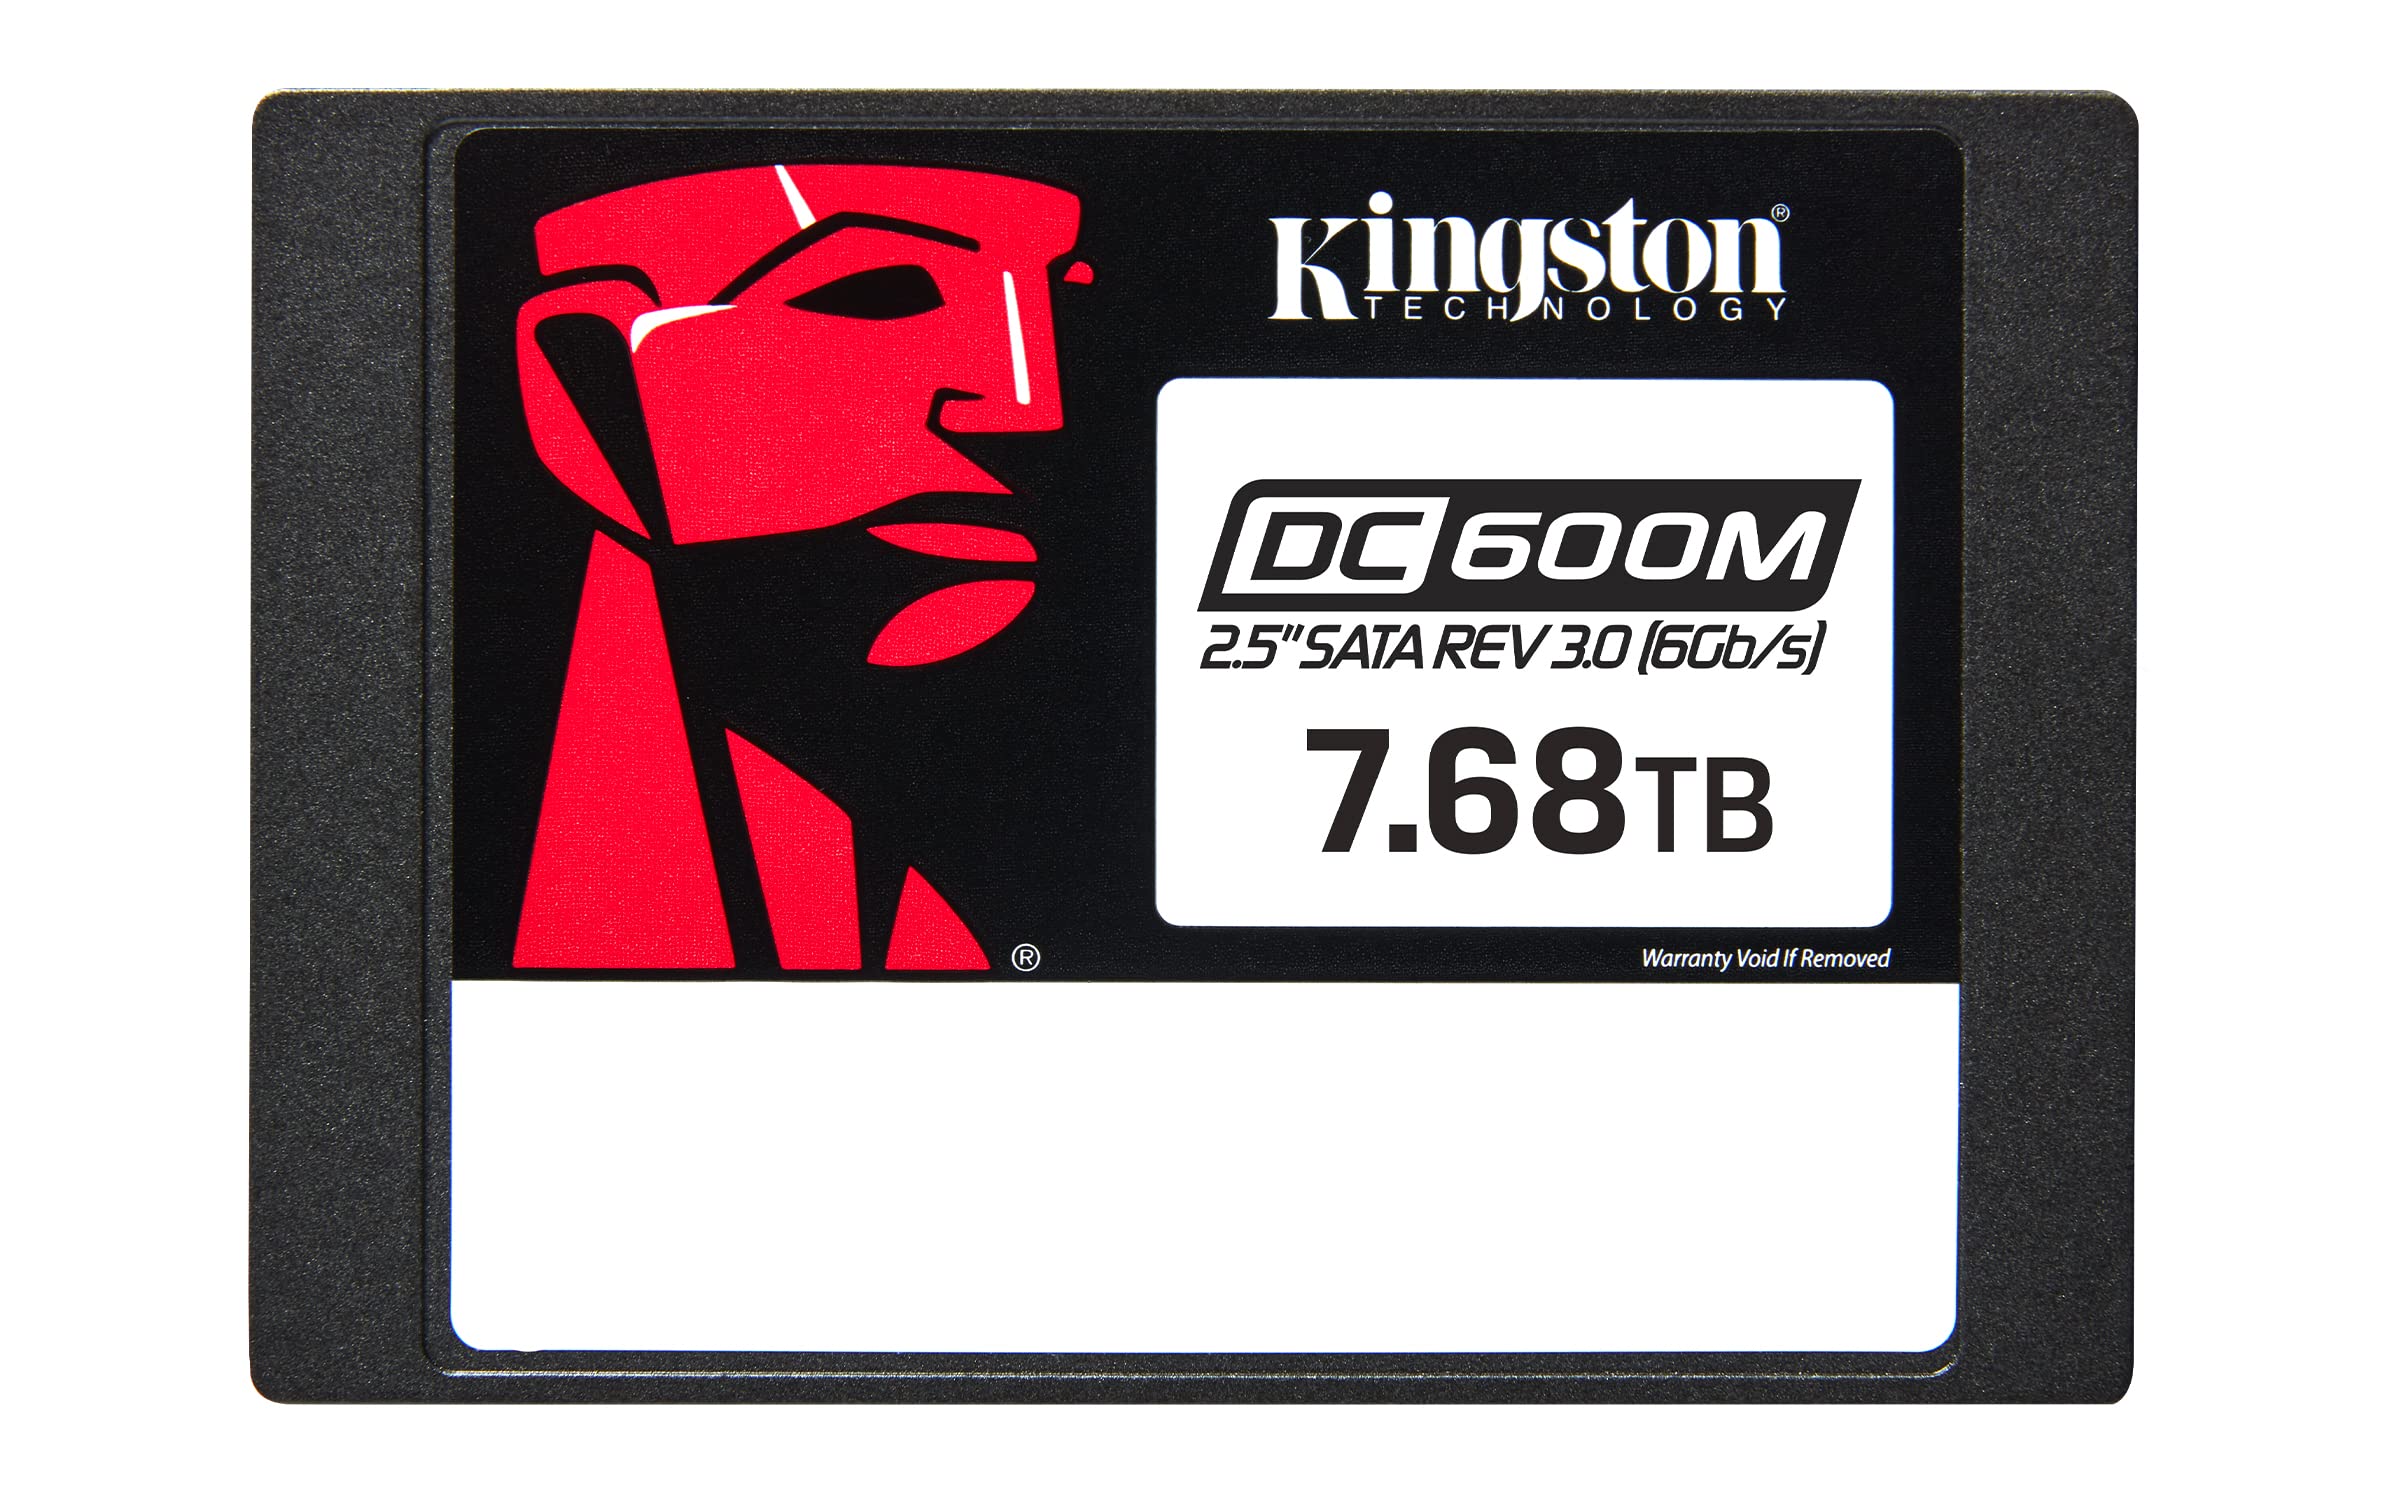 KINGSTON-SEDC600M/7680G